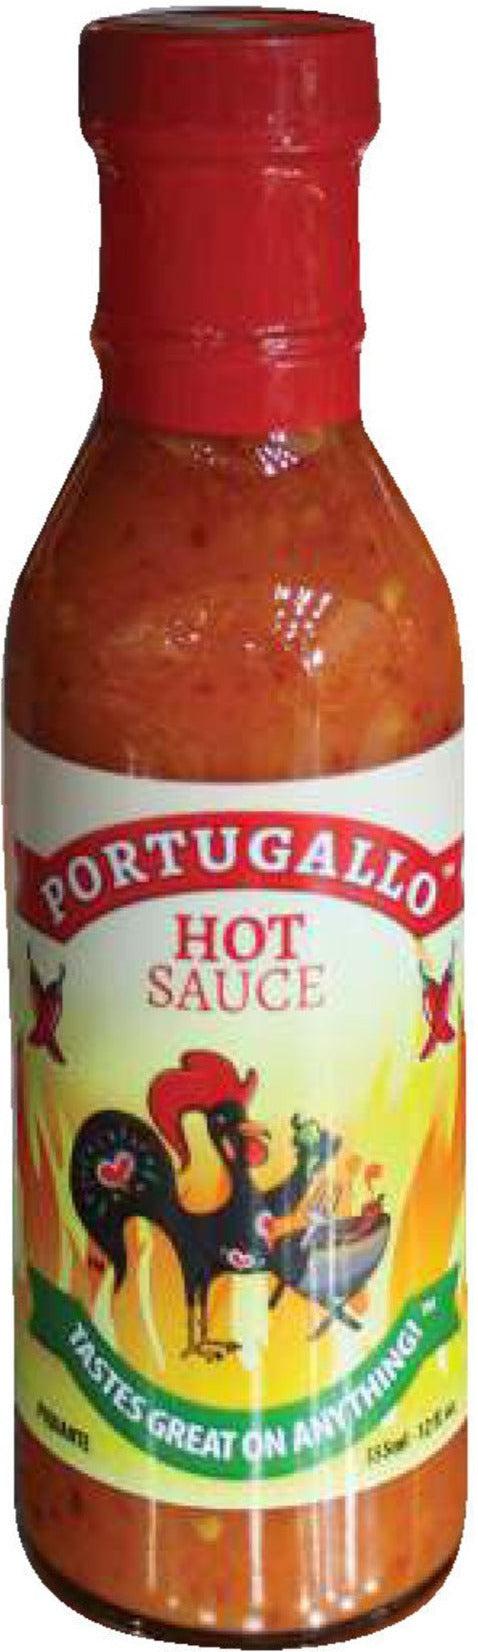 Portugallo - Hot Sauce